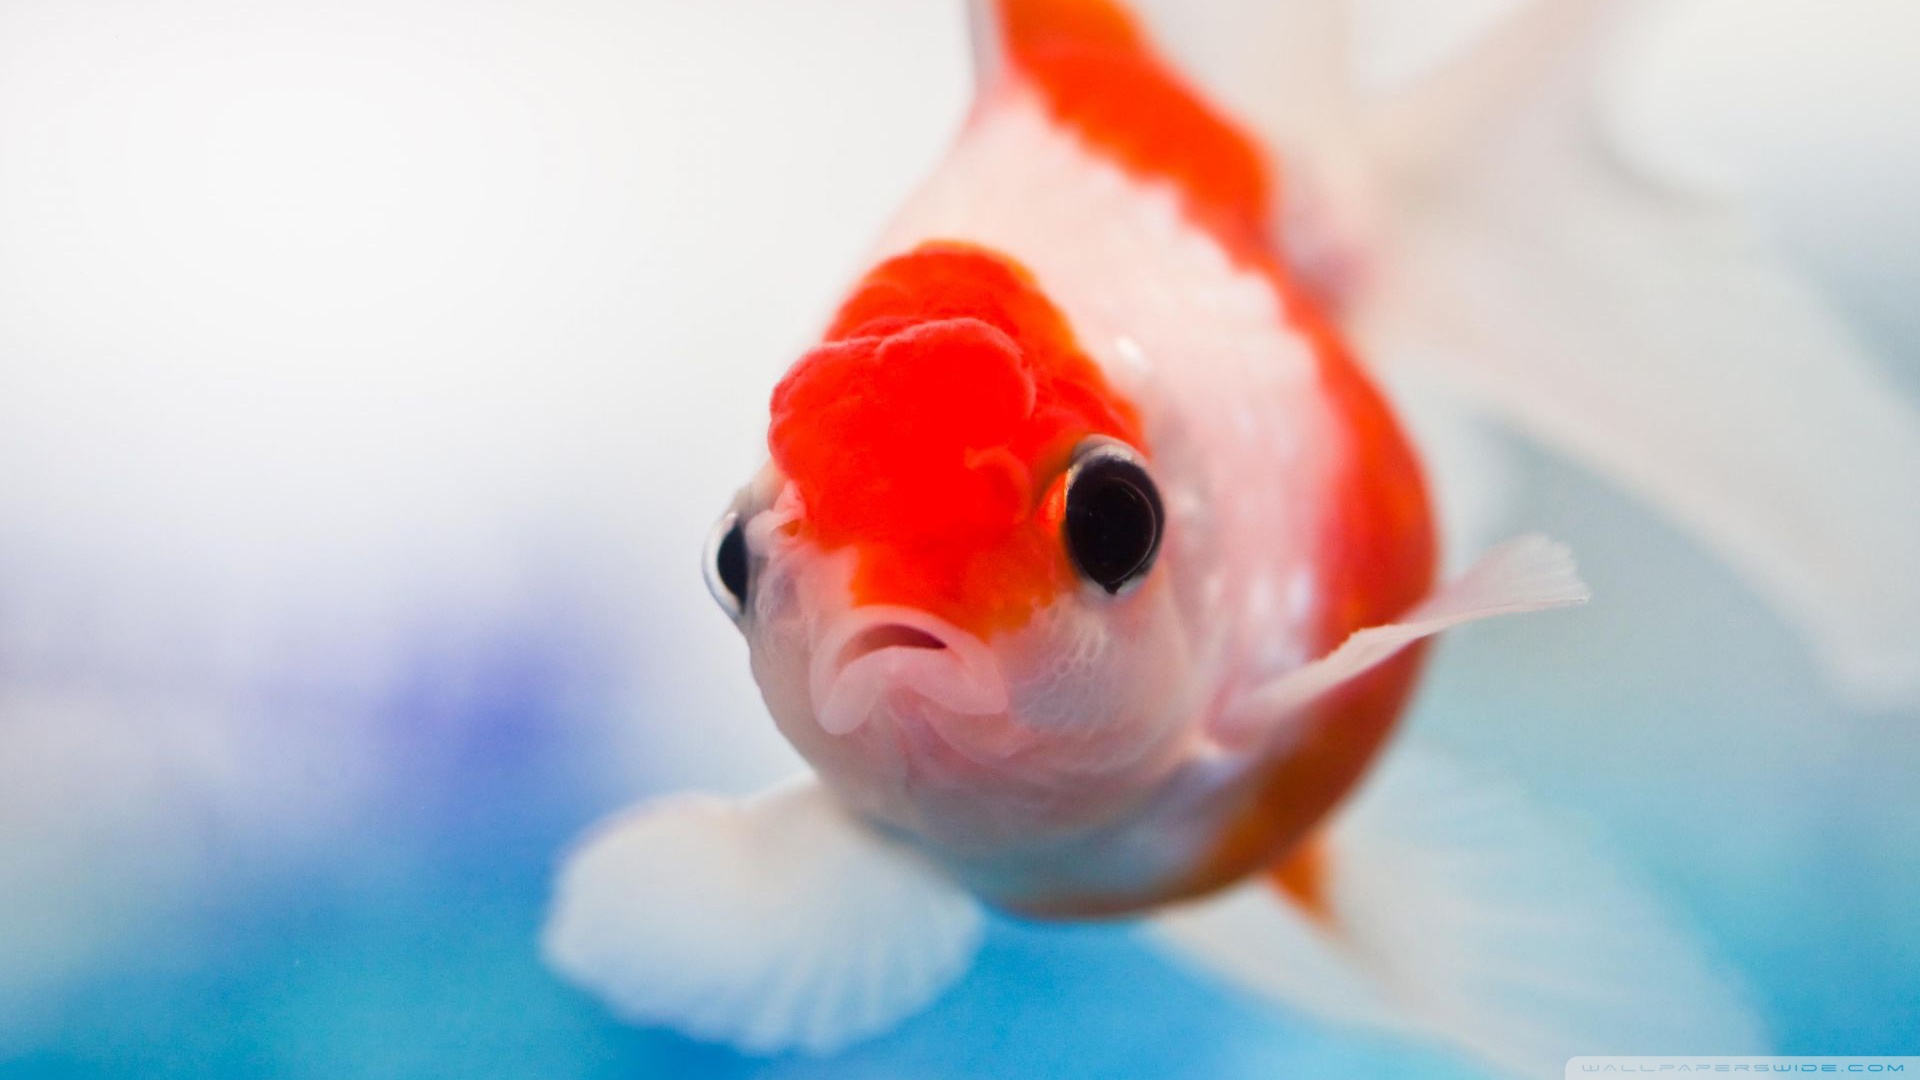 Free download wallpaper Animal, Goldfish on your PC desktop